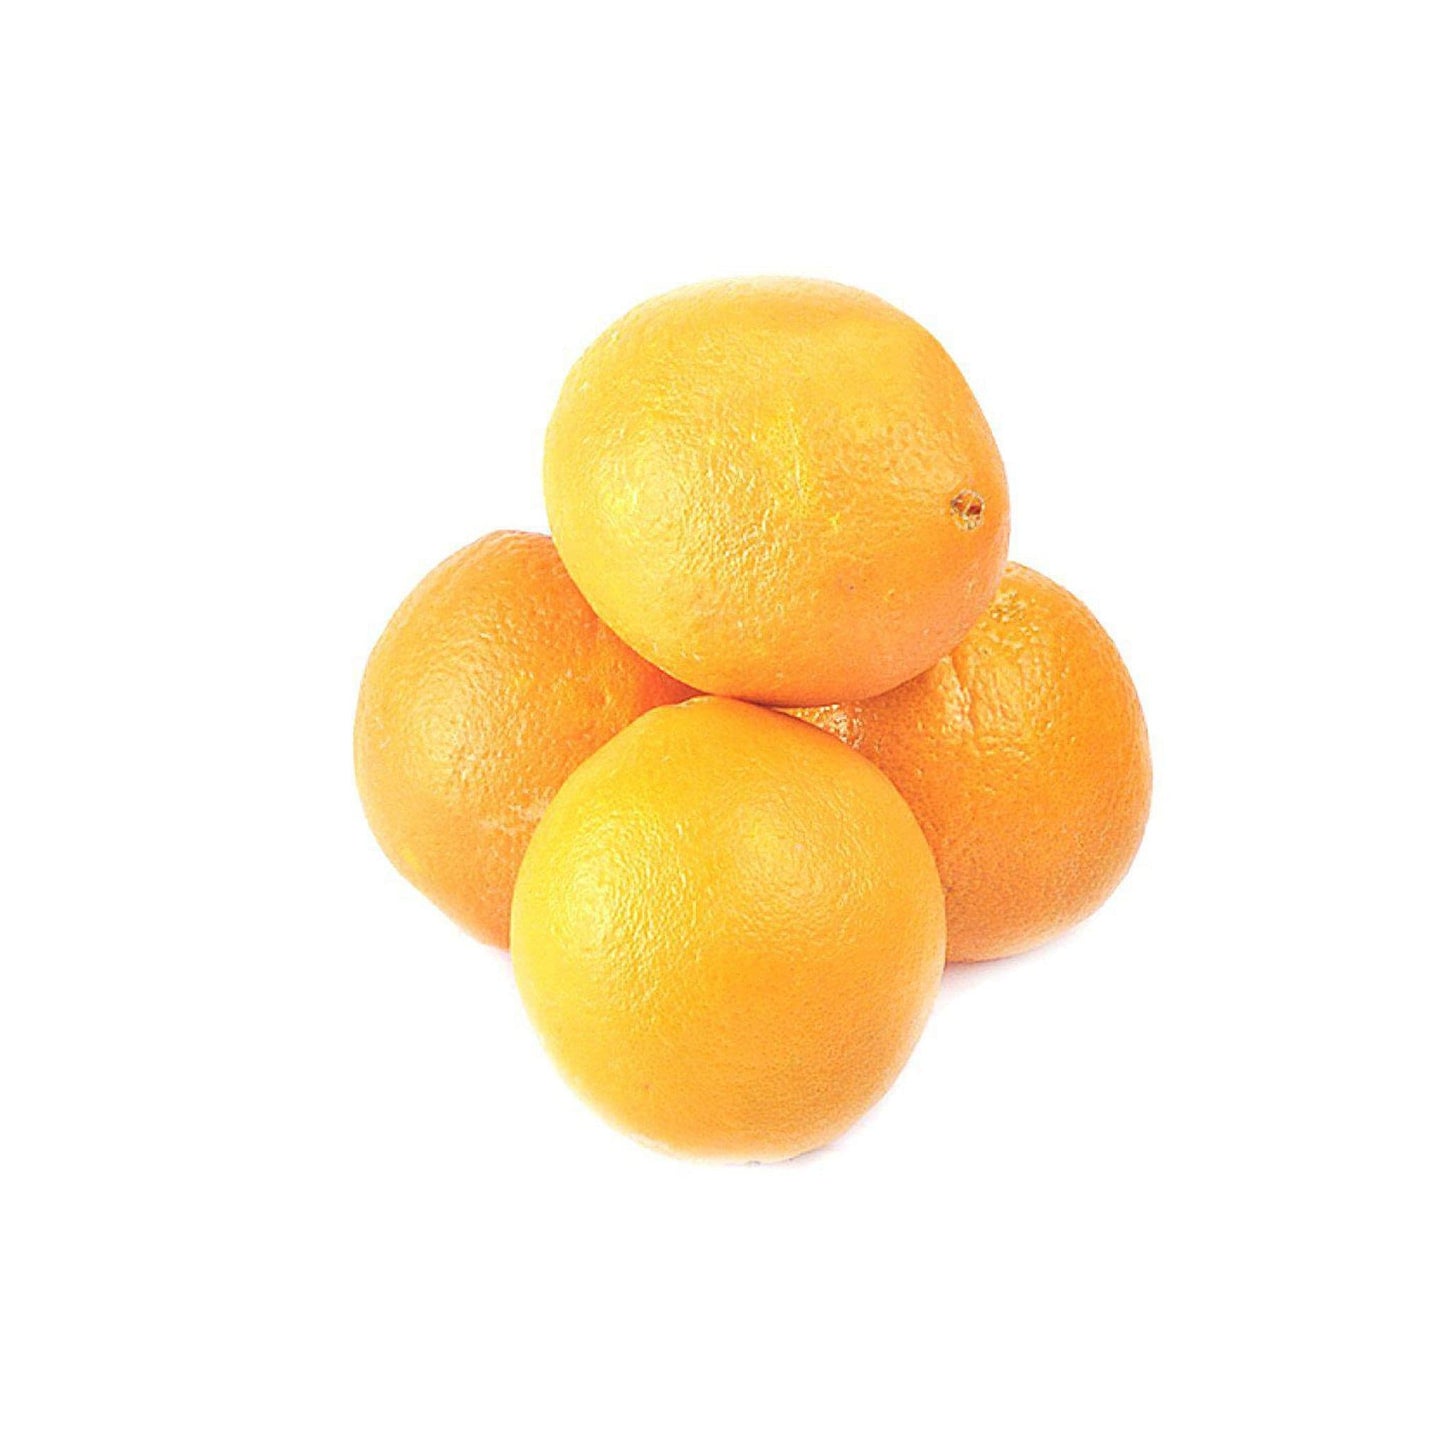 Oranges Imported